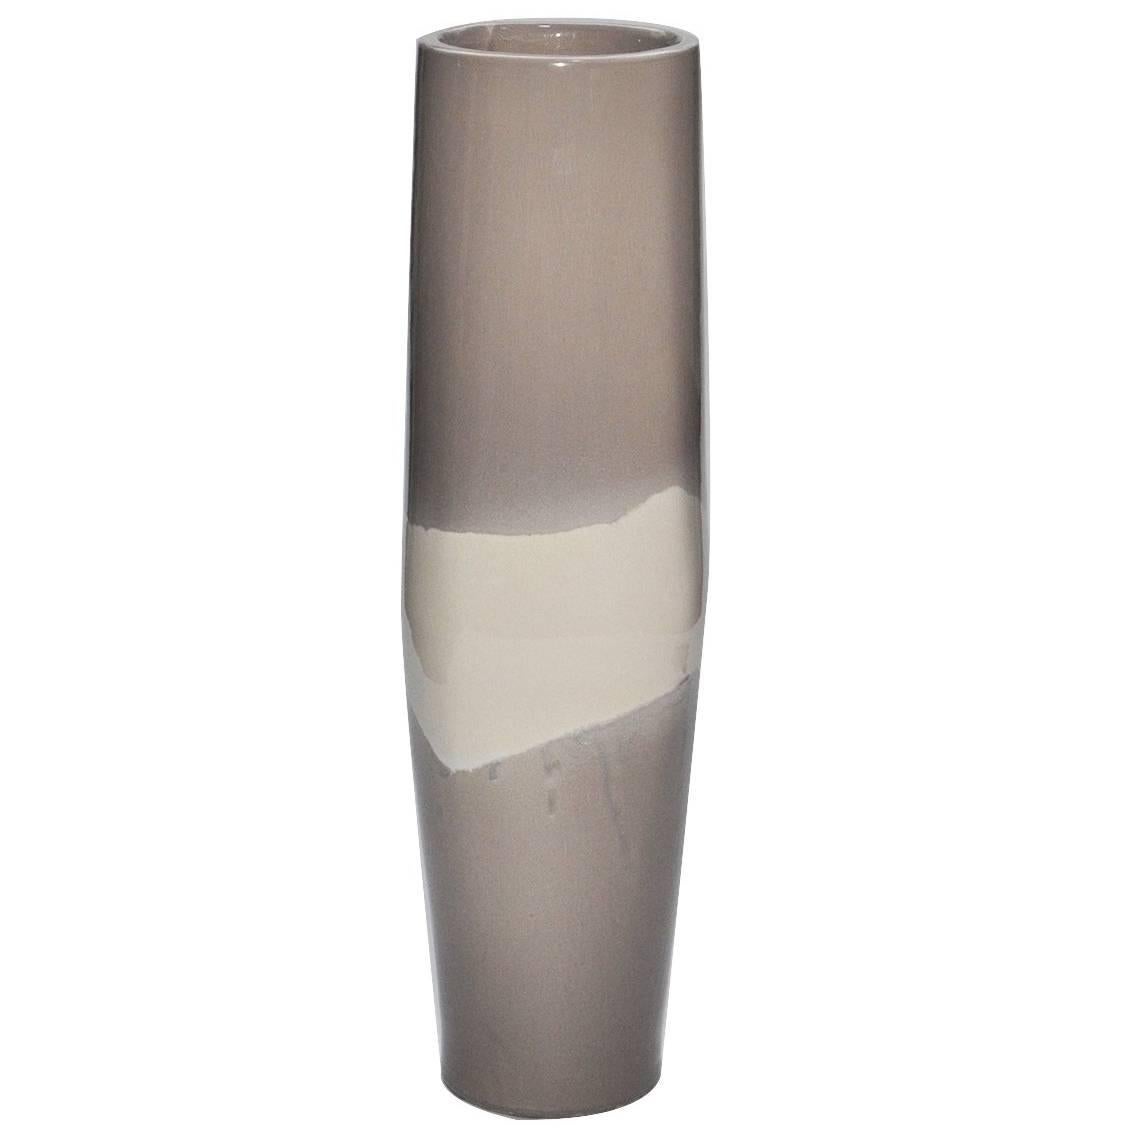 Bambù Vase Gray and White